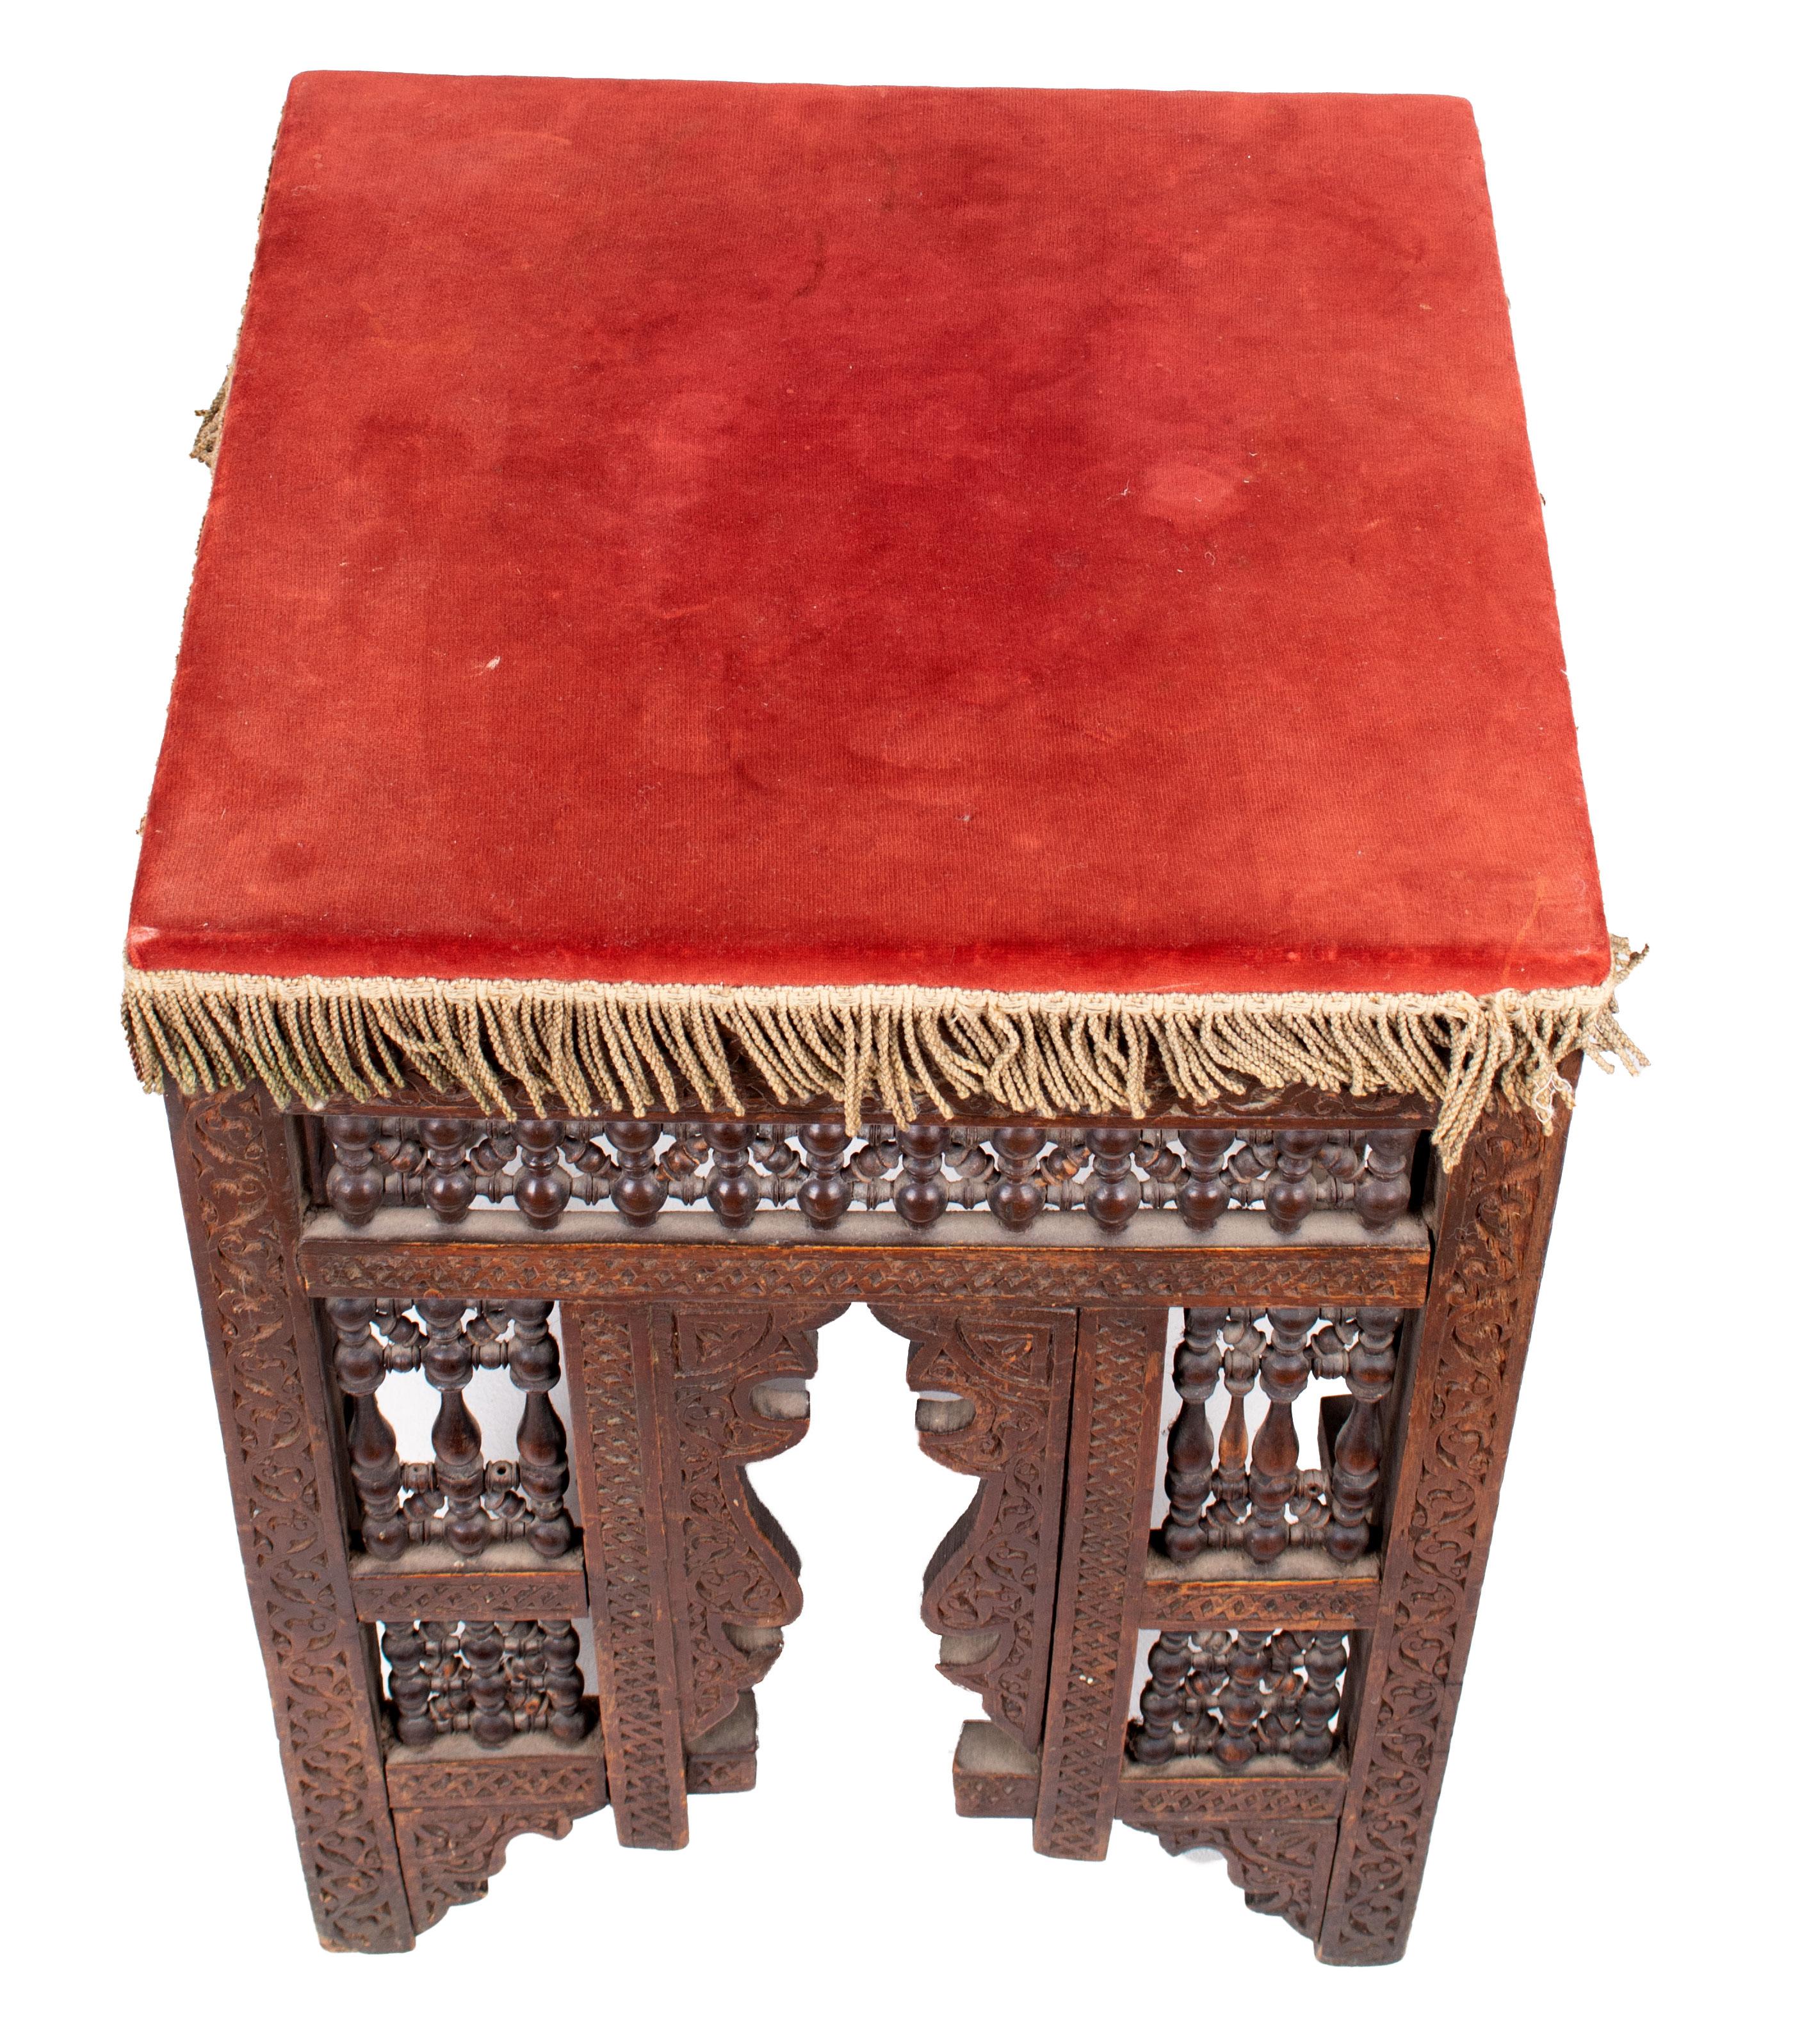 19th Century Turkish Wooden Stool Upholstered in Red Velvet 1